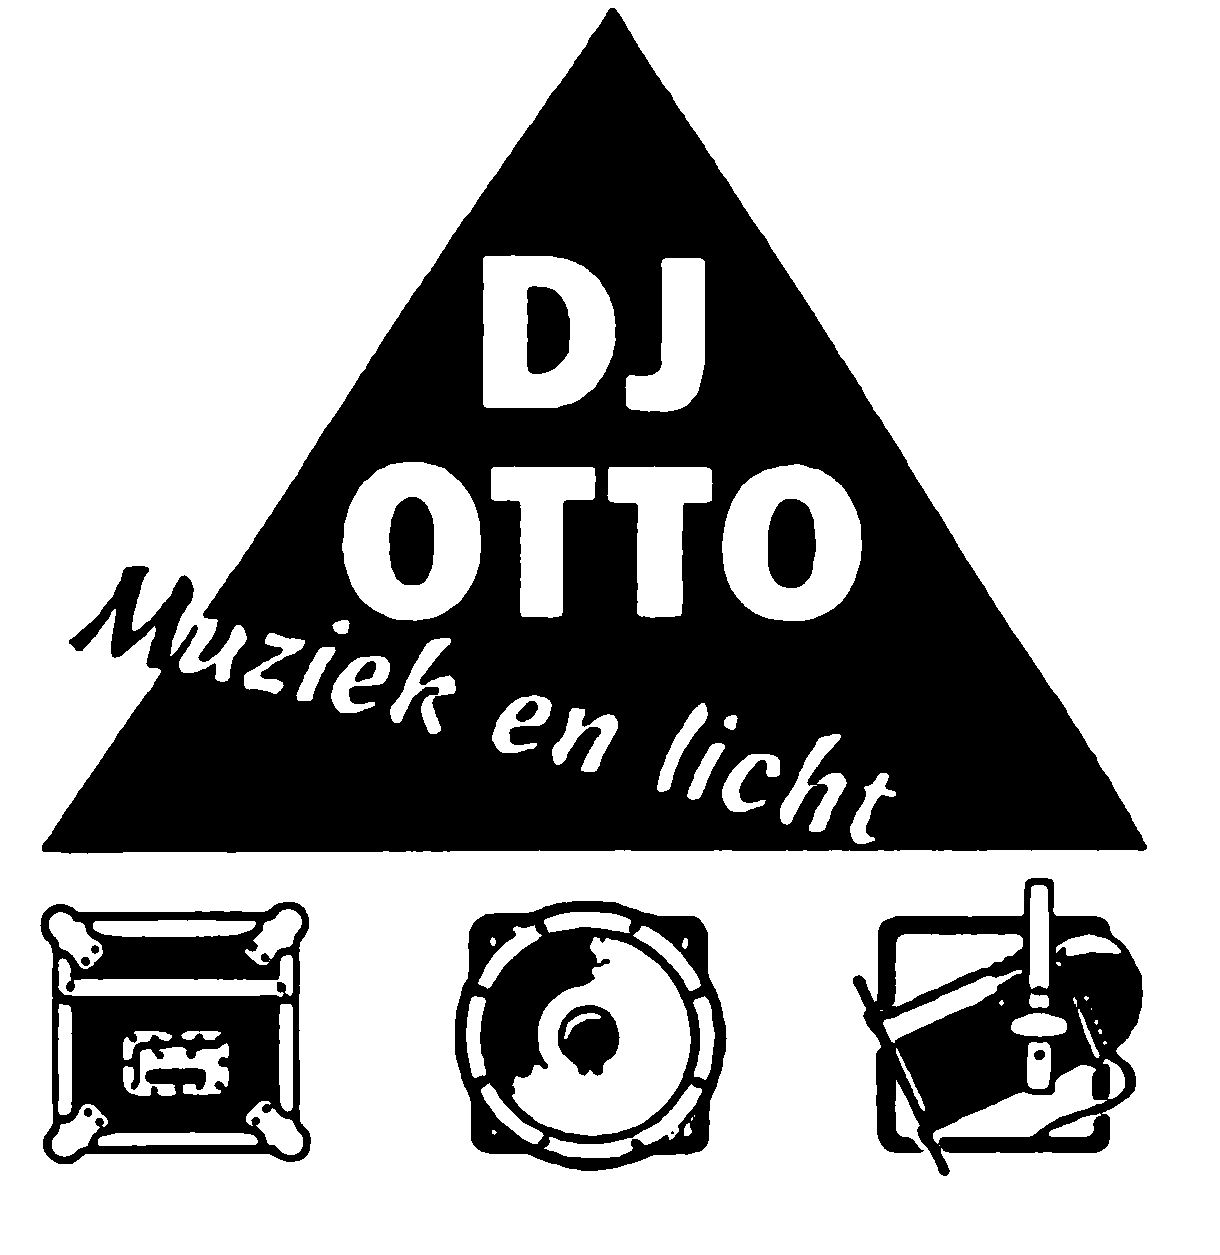 DJ Otto